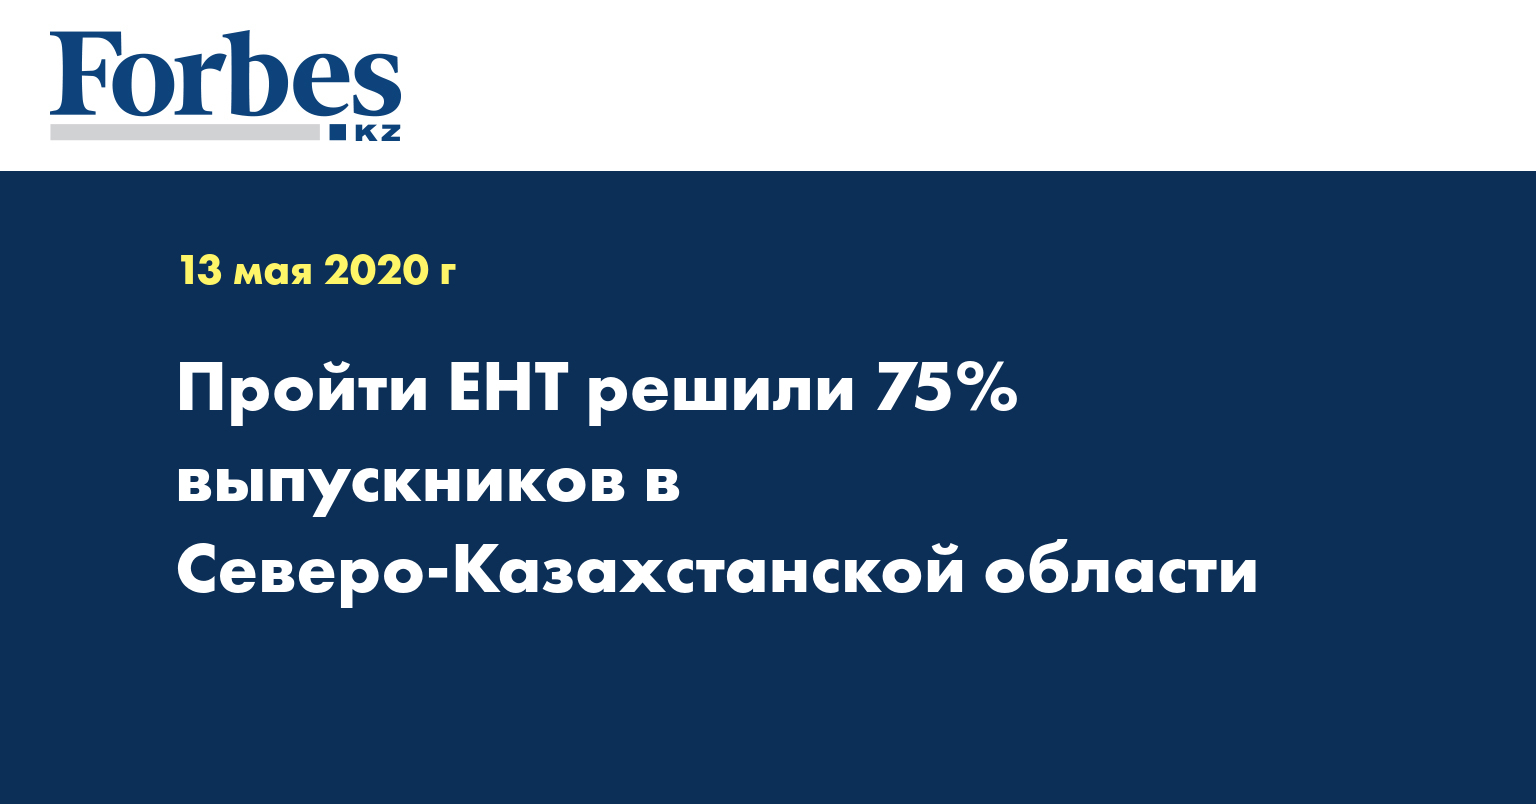 Пройти ЕНТ решили 75% выпускников в Северо-Казахстанской области